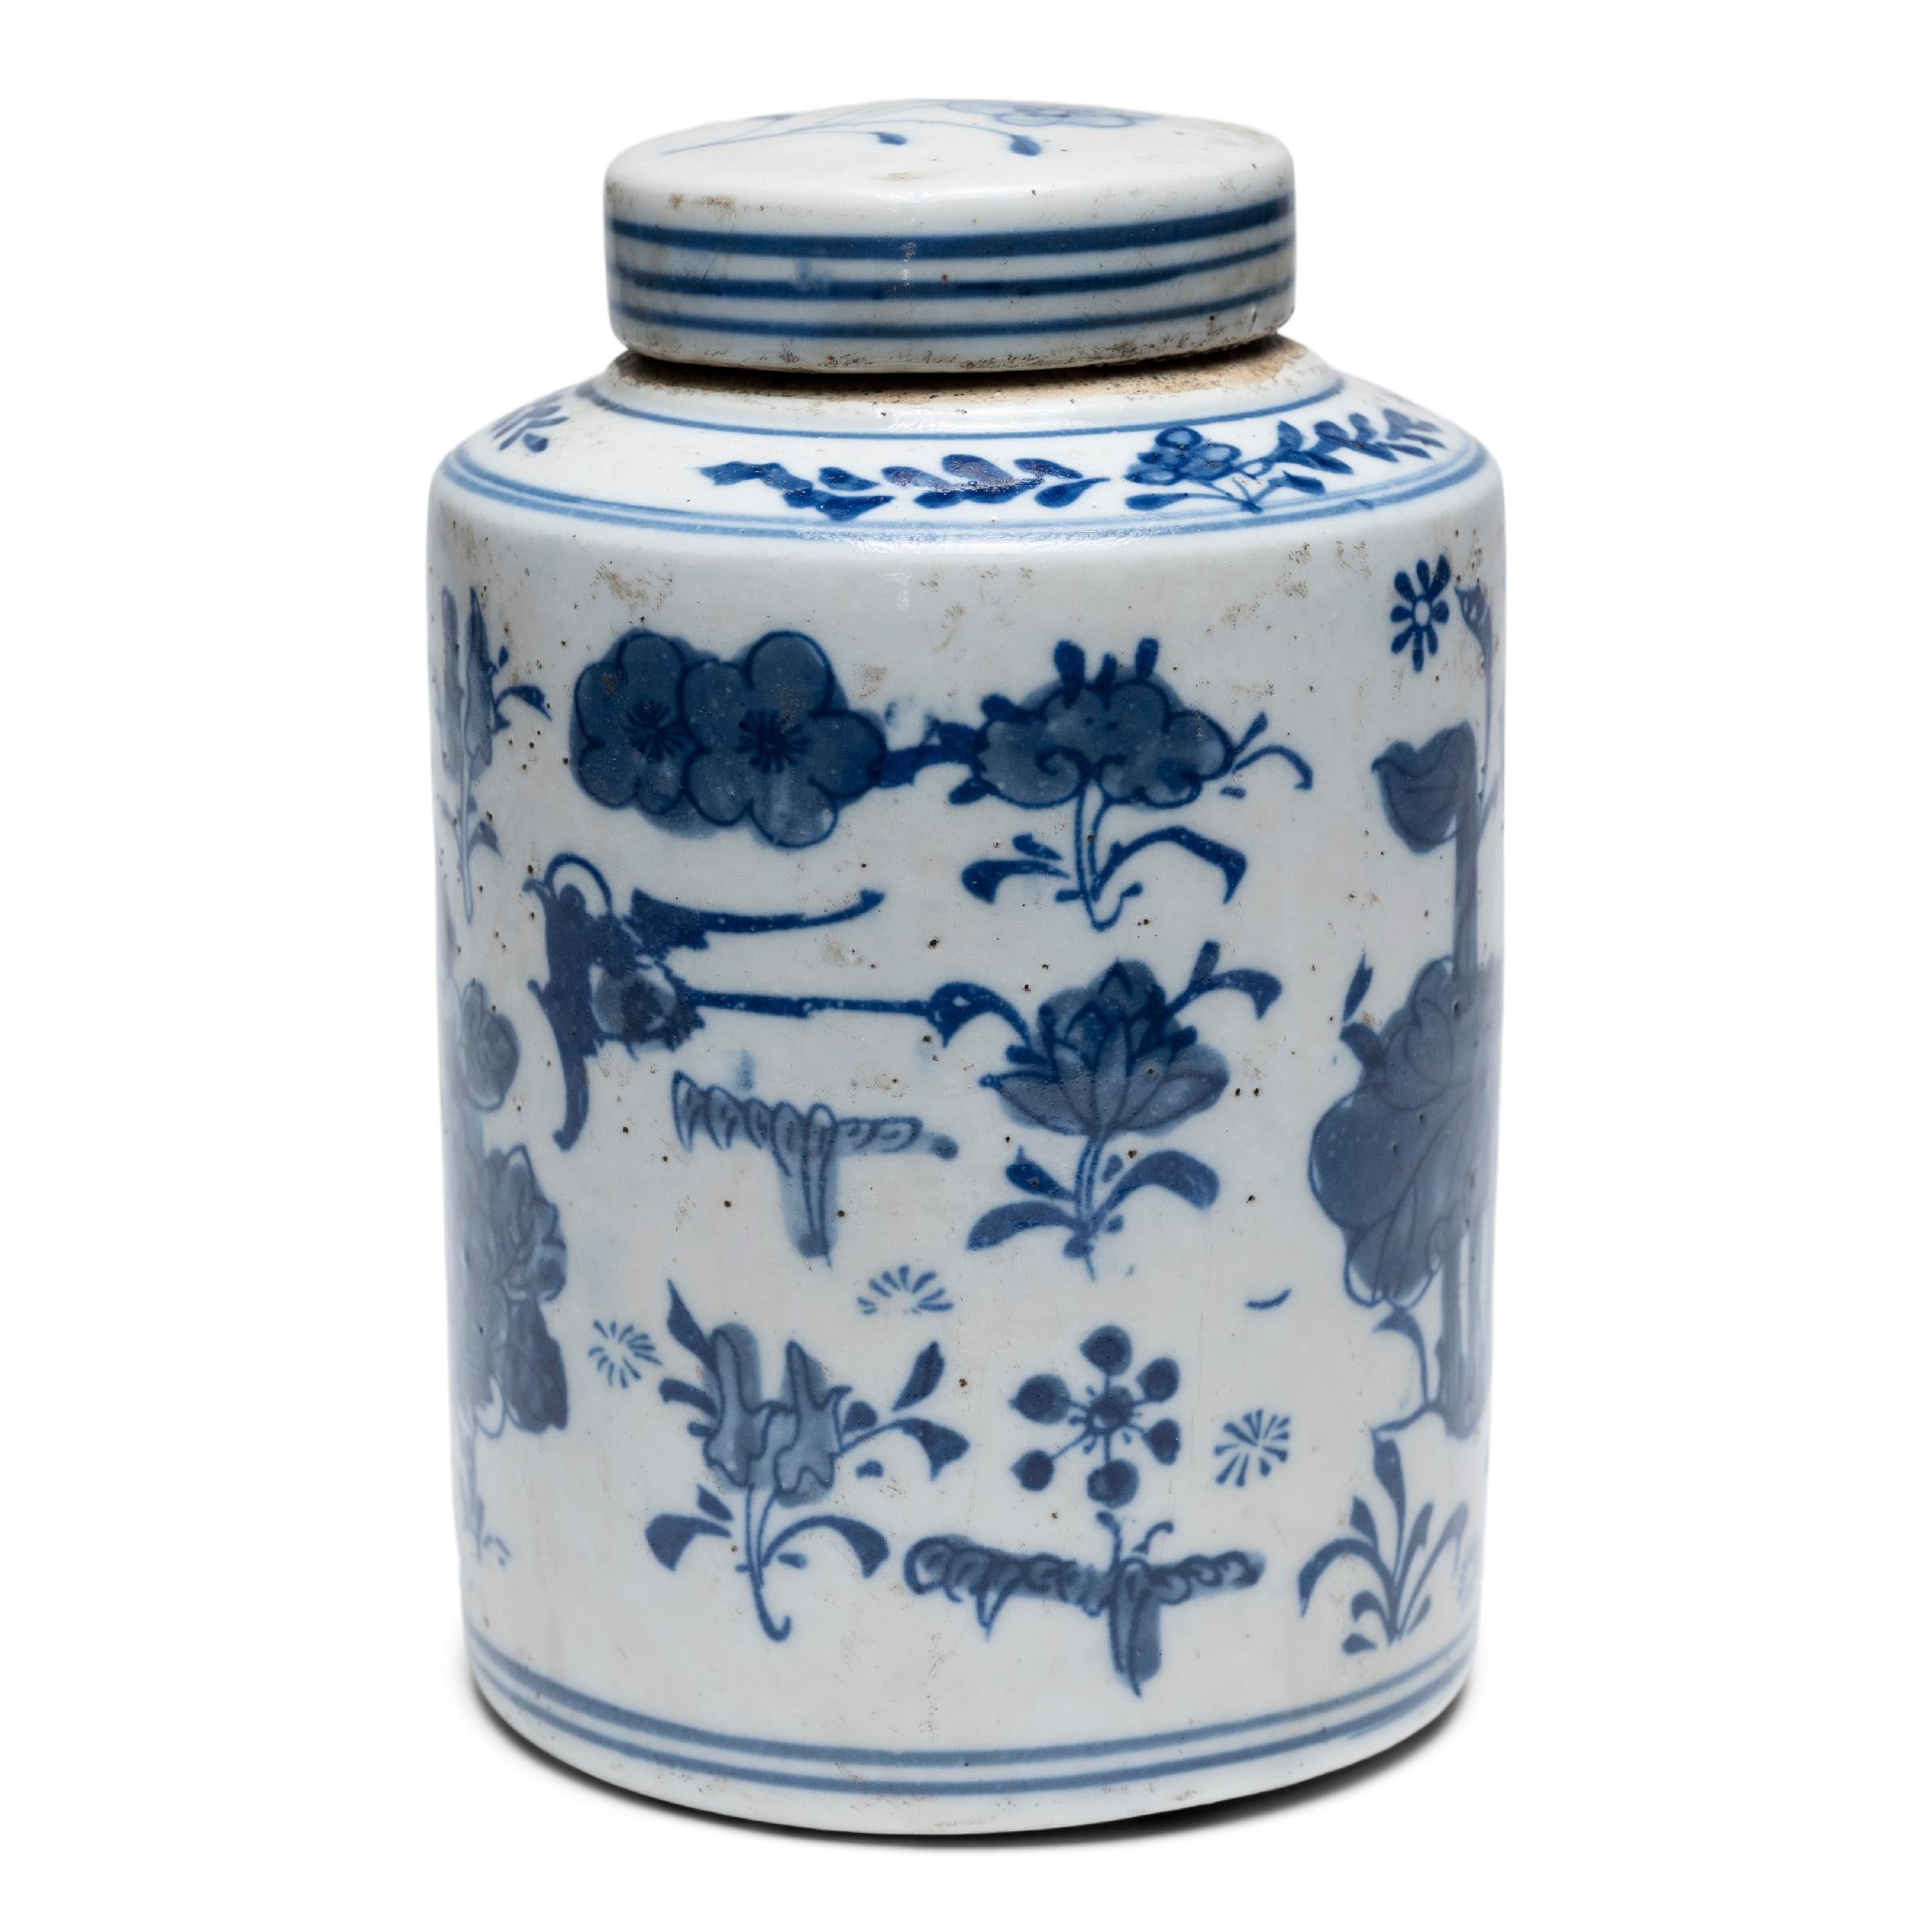 Deckeldosen wie diese wurden in Teeläden in ganz China verwendet, wo das Teetrinken ein Symbol für Geschmack und Vornehmheit der Oberschicht war. Dieses Teeblattgefäß stammt aus dem frühen 20. Jahrhundert und ist ein Beispiel für die zeitlose